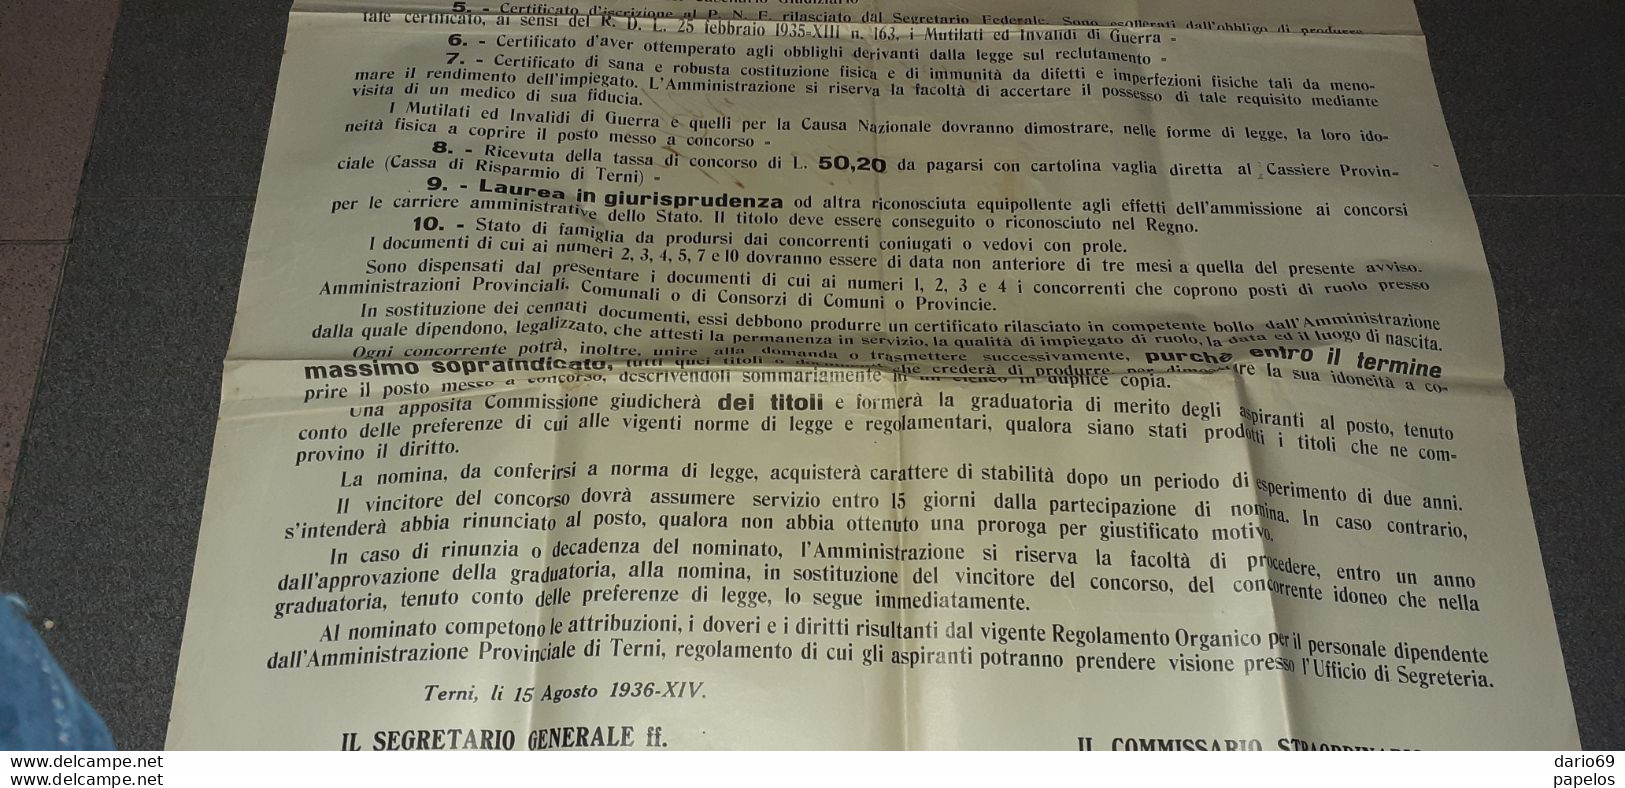 1936 TERNI - AVVISO DI CONCORSO PER IL POSTO DI SEGRETARIO - Documenti Storici